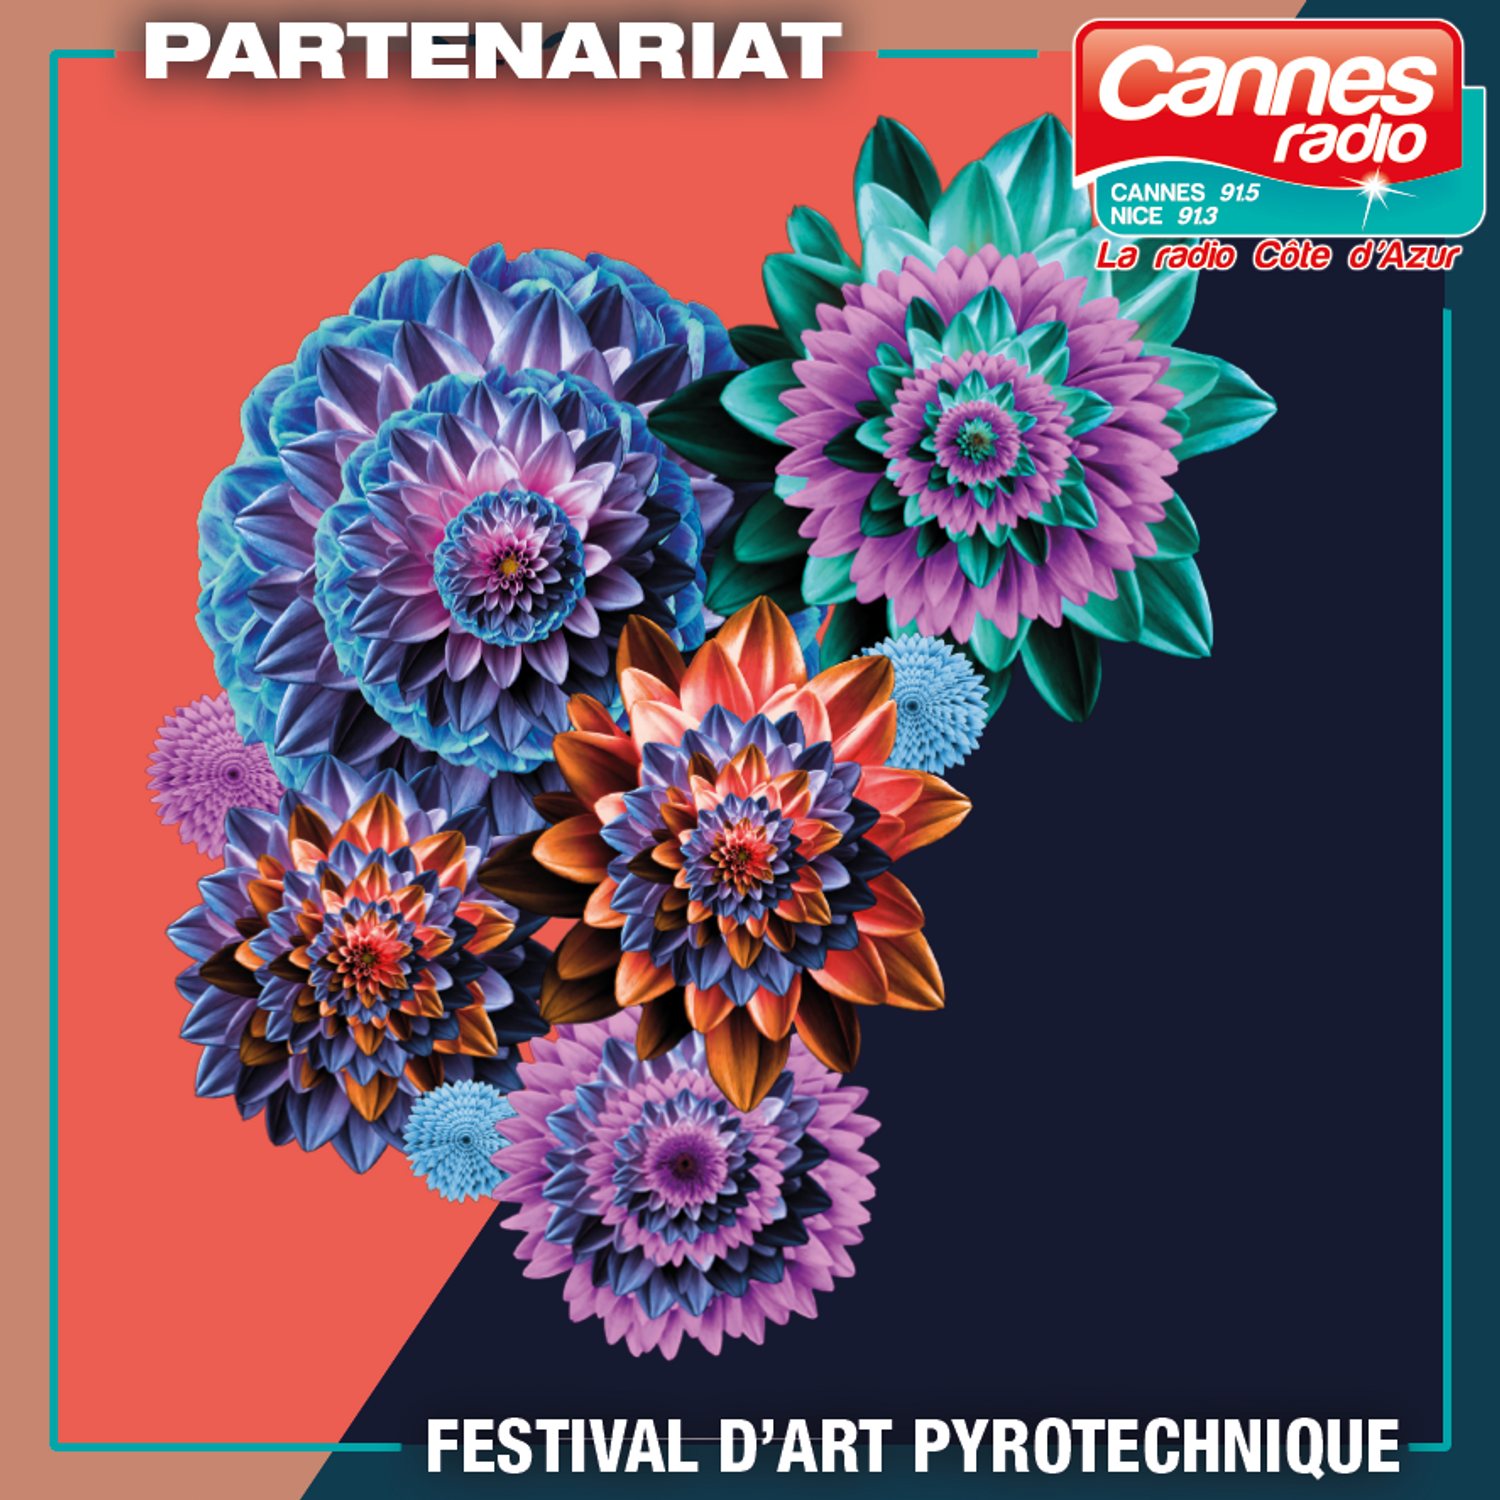 13/07/22 : OUVERTURE DEMAIN DU FESTIVAL D'ART PYROTECHNIQUE DE CANNES